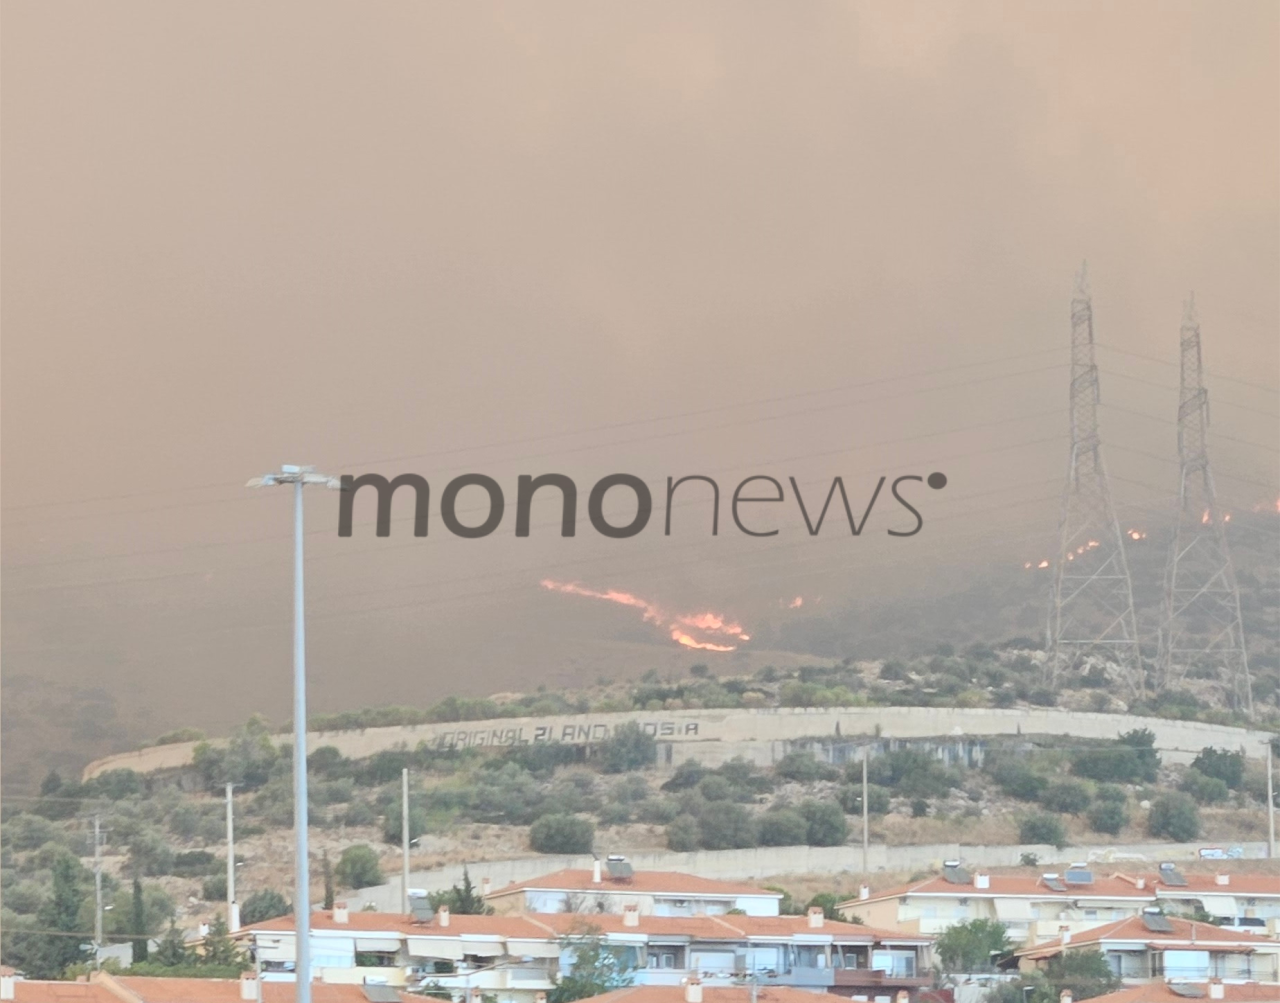 Αποκλειστικές εικόνες του mononews από τη φωτιά που ξέσπασε στην περιοχή της Φυλής στις 22 Αυγούστου 2023.